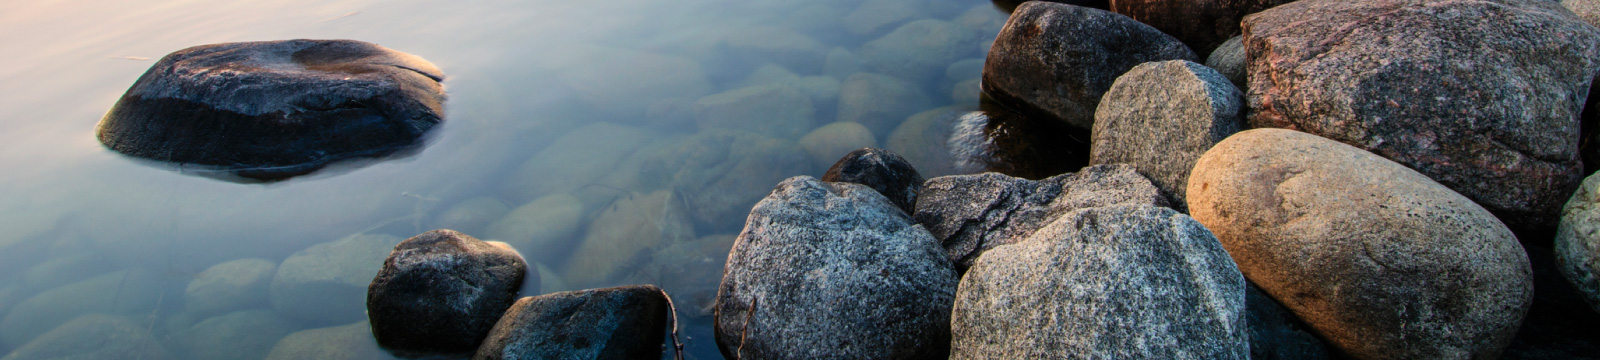 Rocks on a lake shoreline